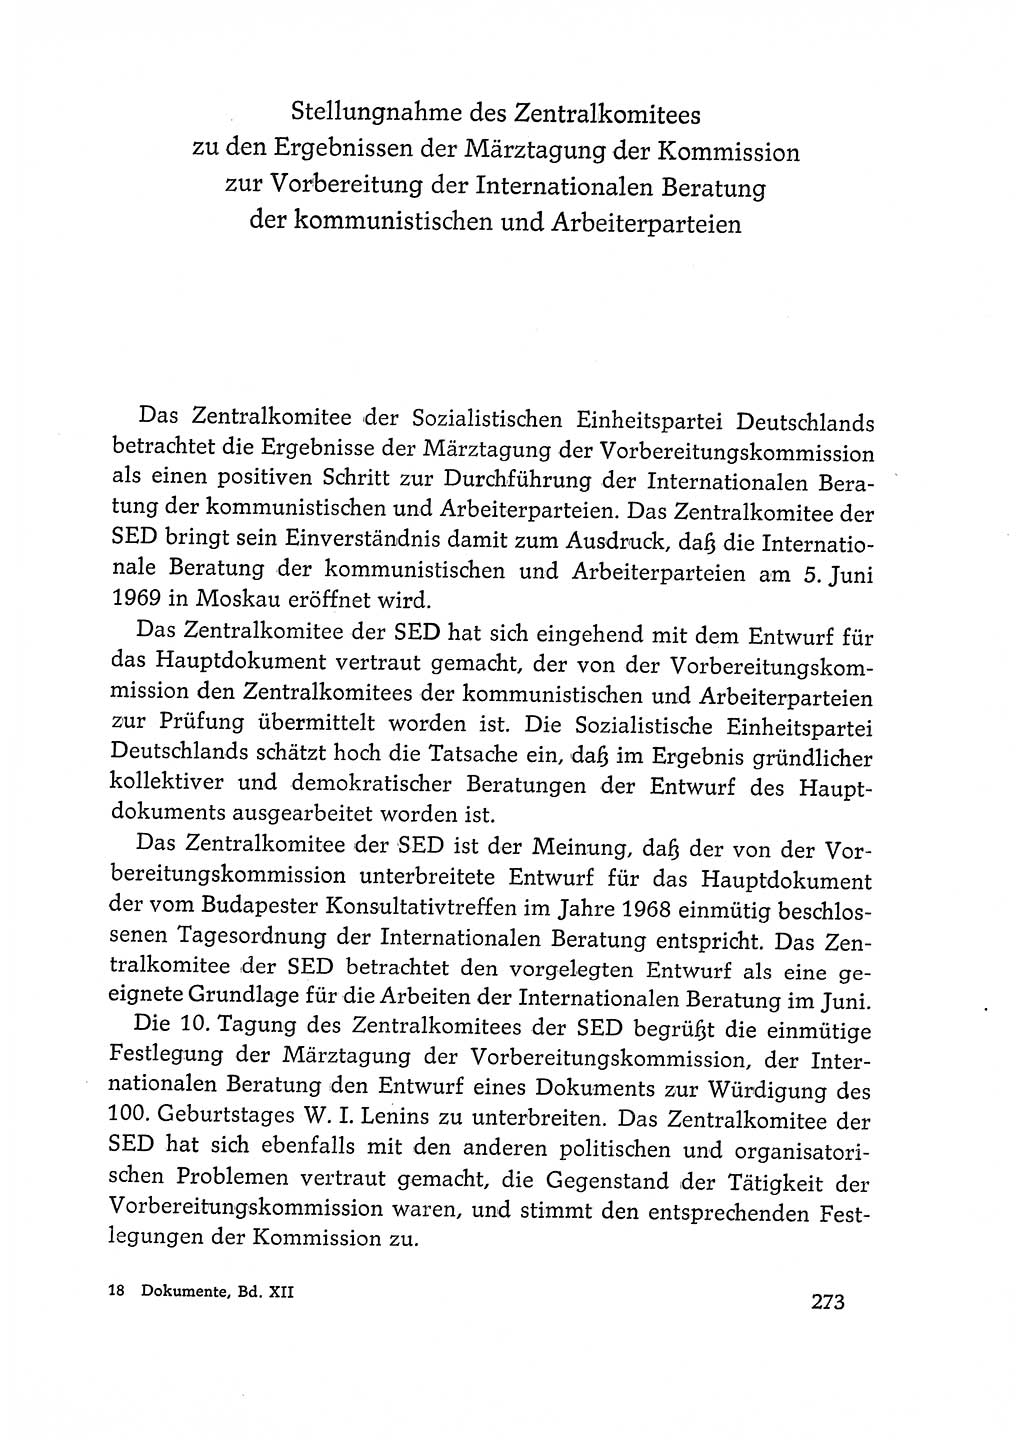 Dokumente der Sozialistischen Einheitspartei Deutschlands (SED) [Deutsche Demokratische Republik (DDR)] 1968-1969, Seite 273 (Dok. SED DDR 1968-1969, S. 273)